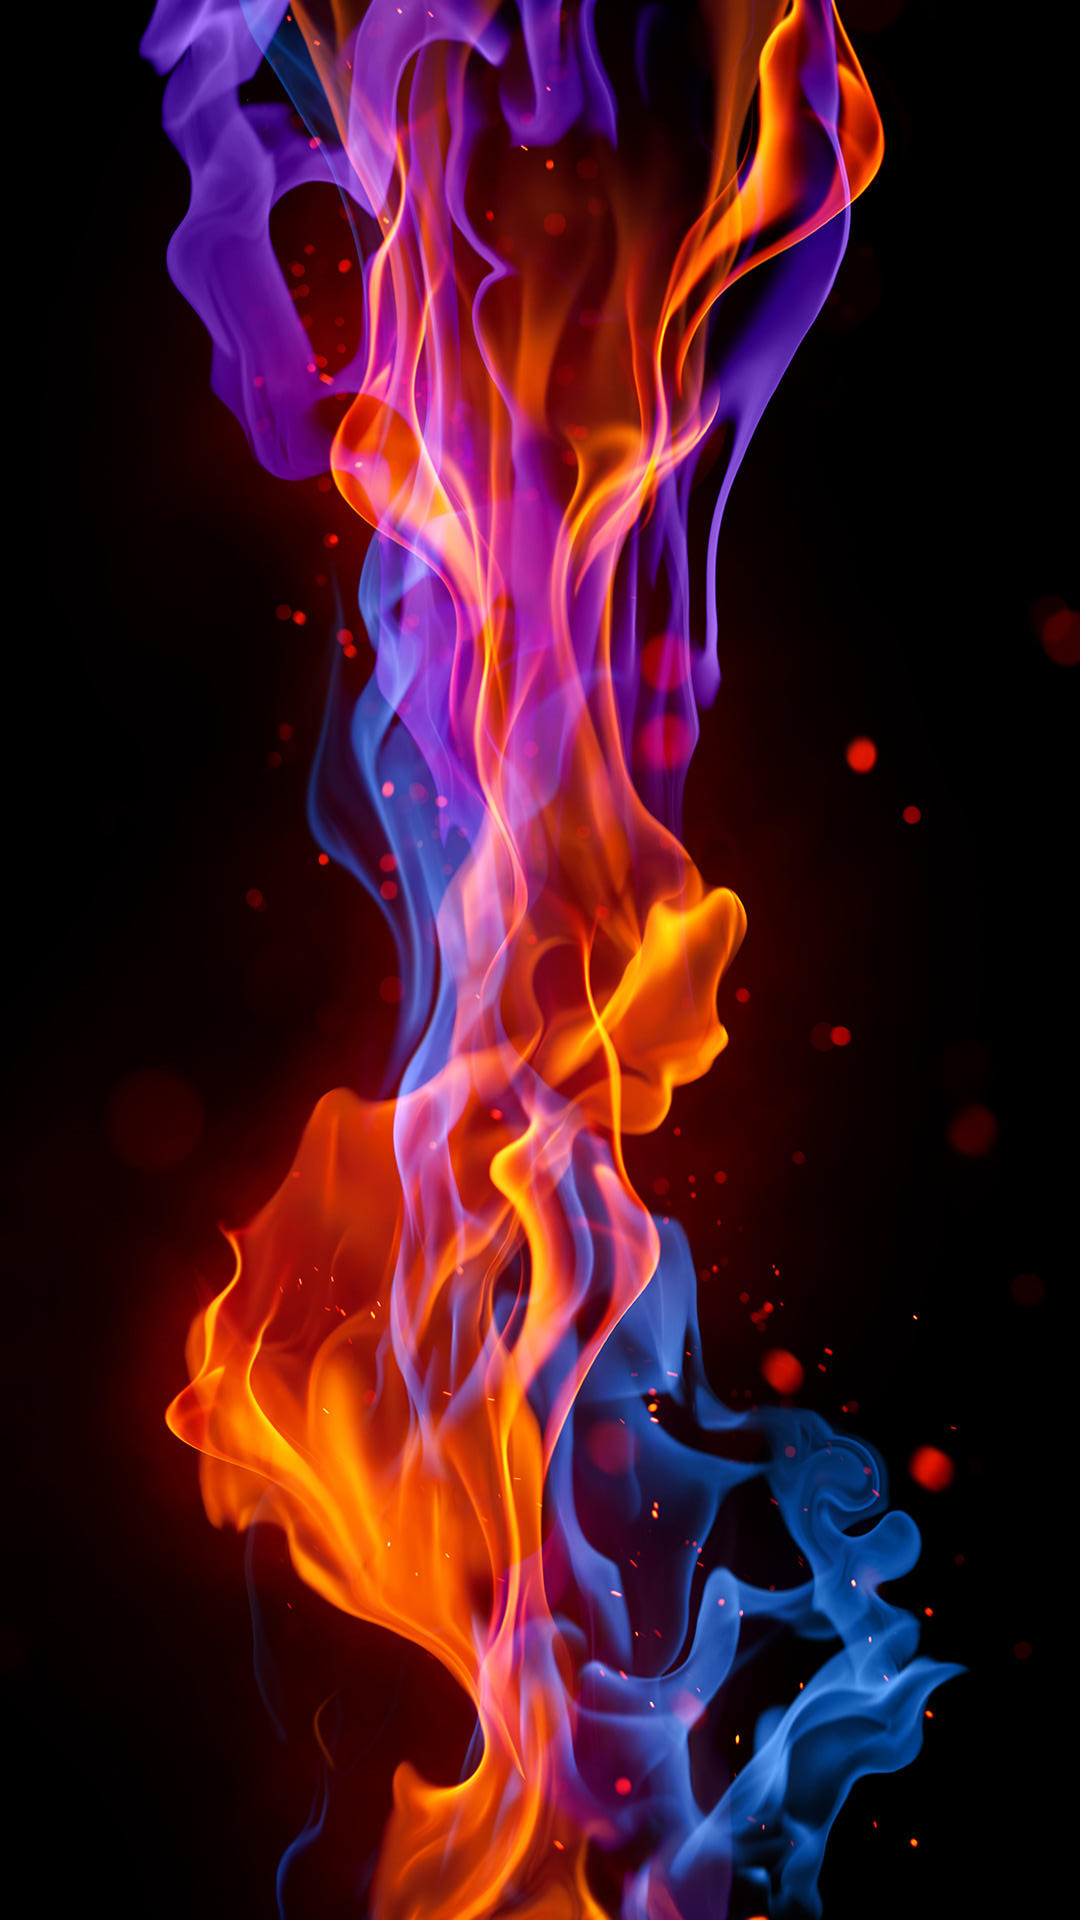 Fire iPhone Wallpaper HD resolution 1080x1920